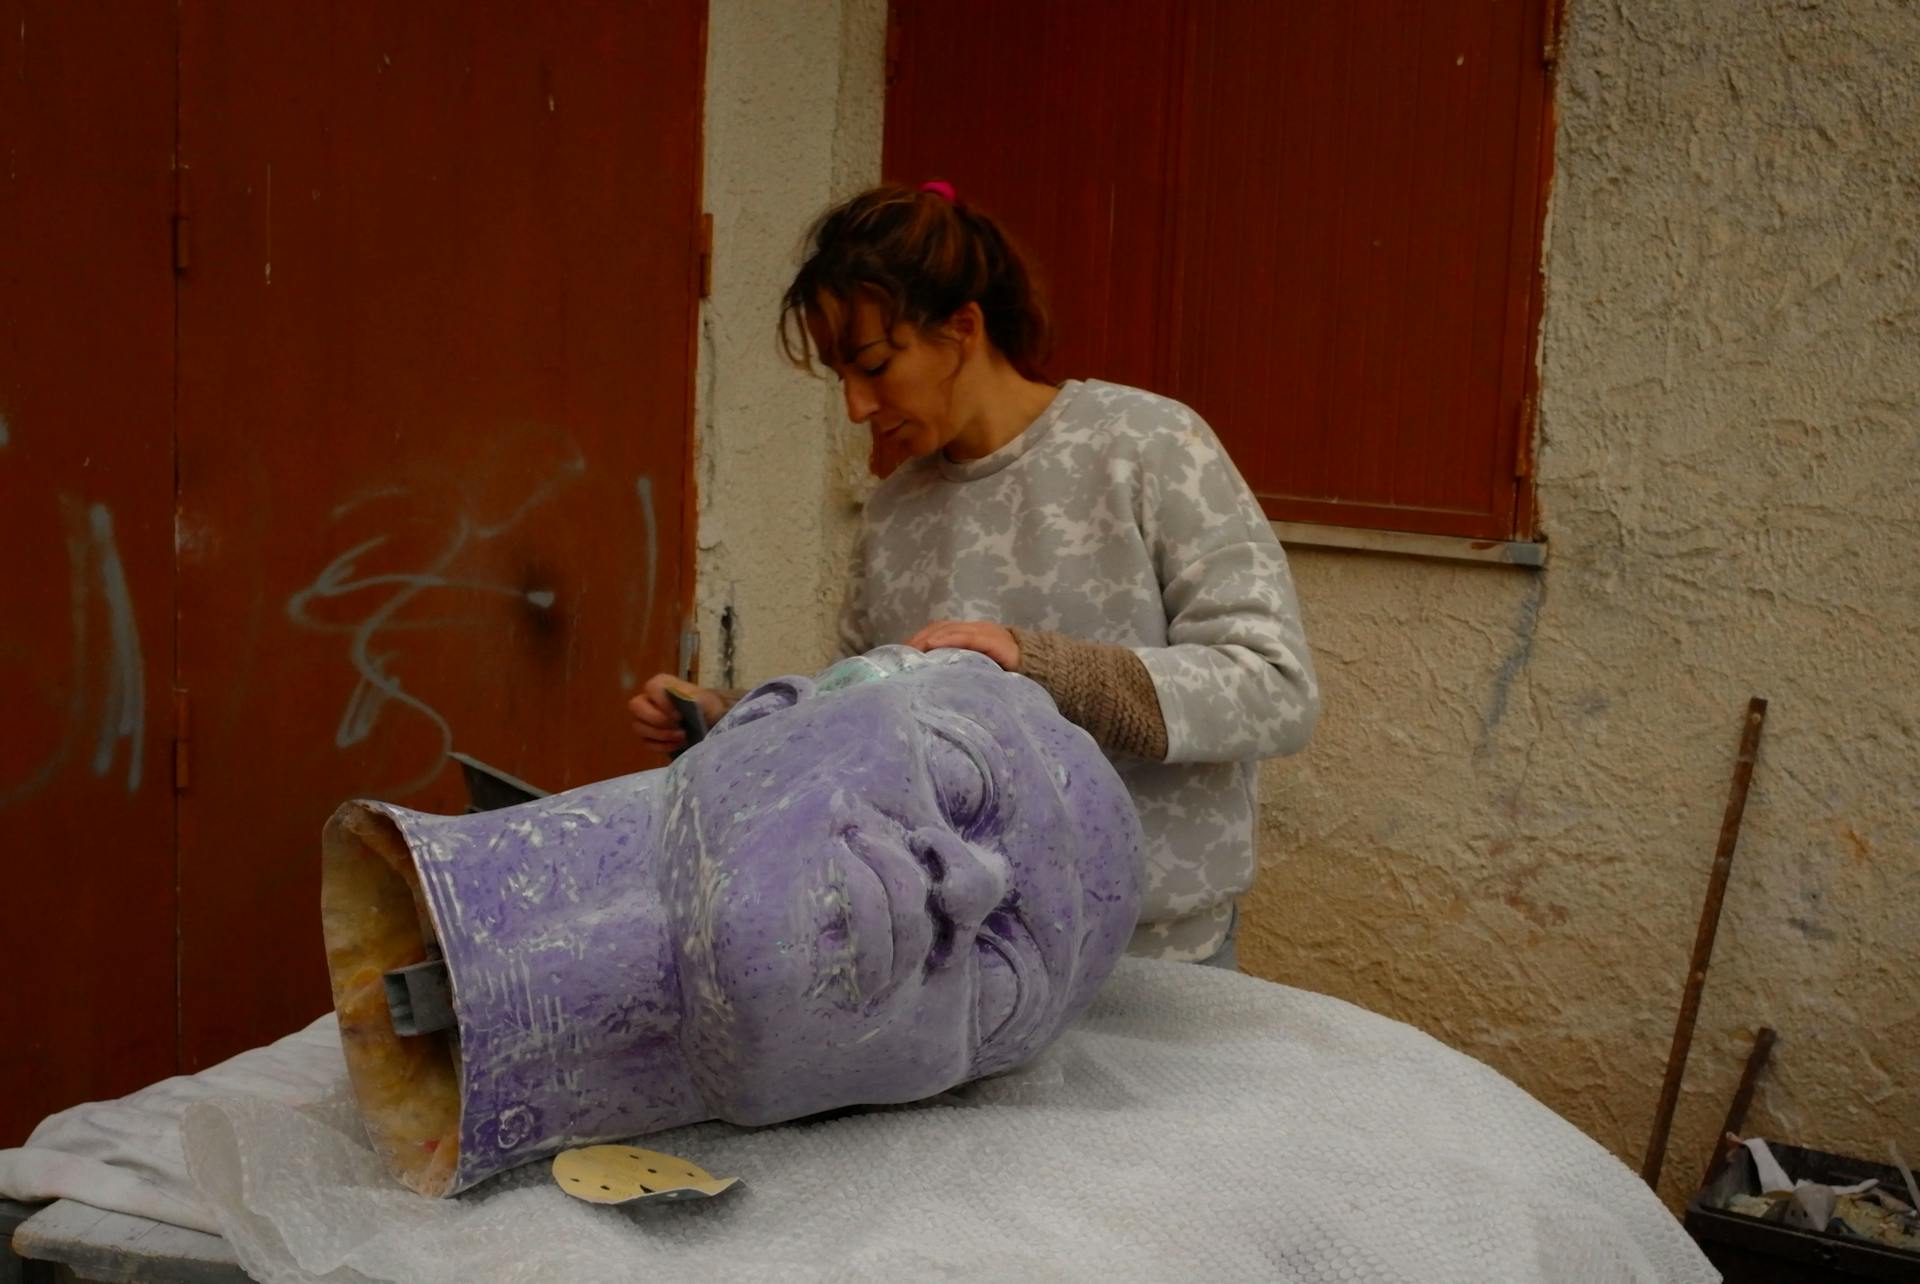 Gabriella shaping a large sculpture's head